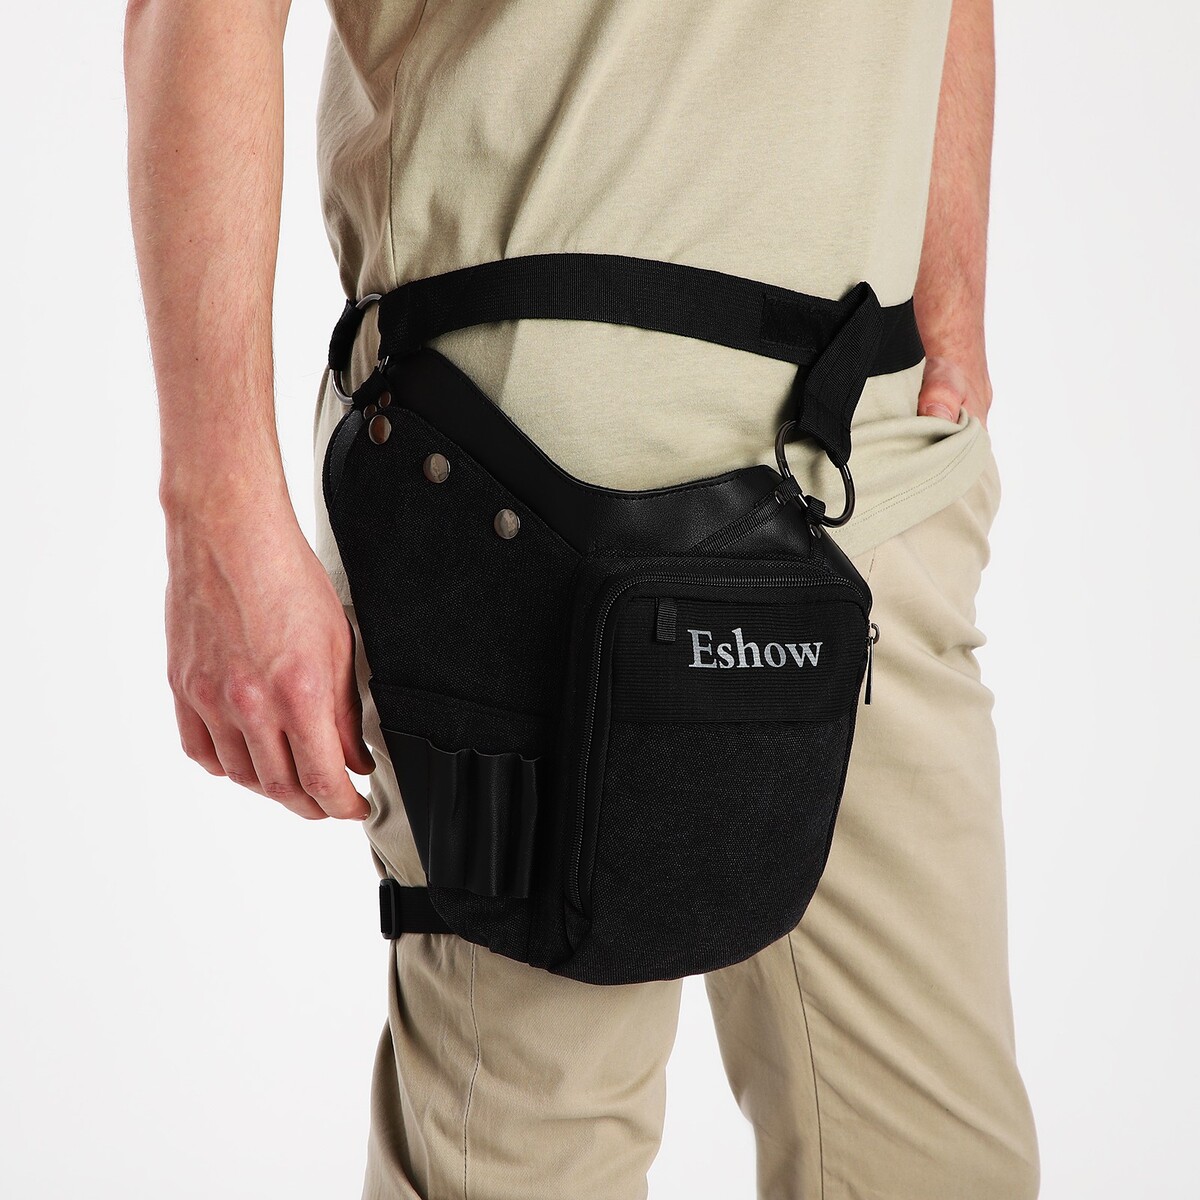 Поясная сумка на молнии, 3 наружных кармана, зацеп на бедро, цвет черный поясная сумка для садового инструмента на ремне 3 кармана